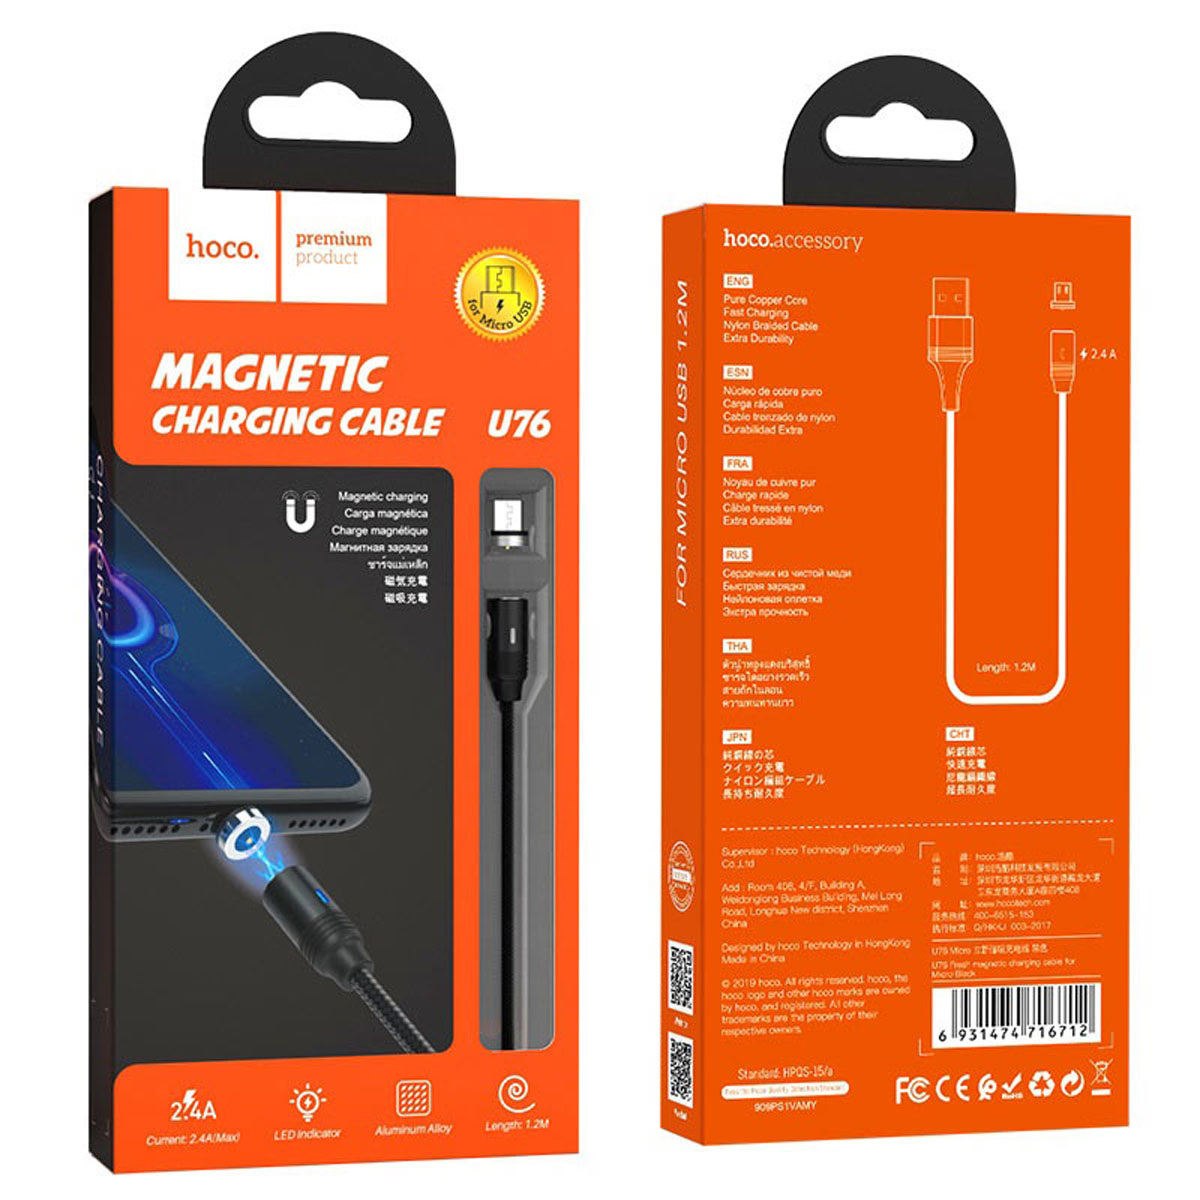 Магнитный зарядный кабель HOCO U76 Fresh Micro USB, 2A, длина 1.2 метра, цвет черный